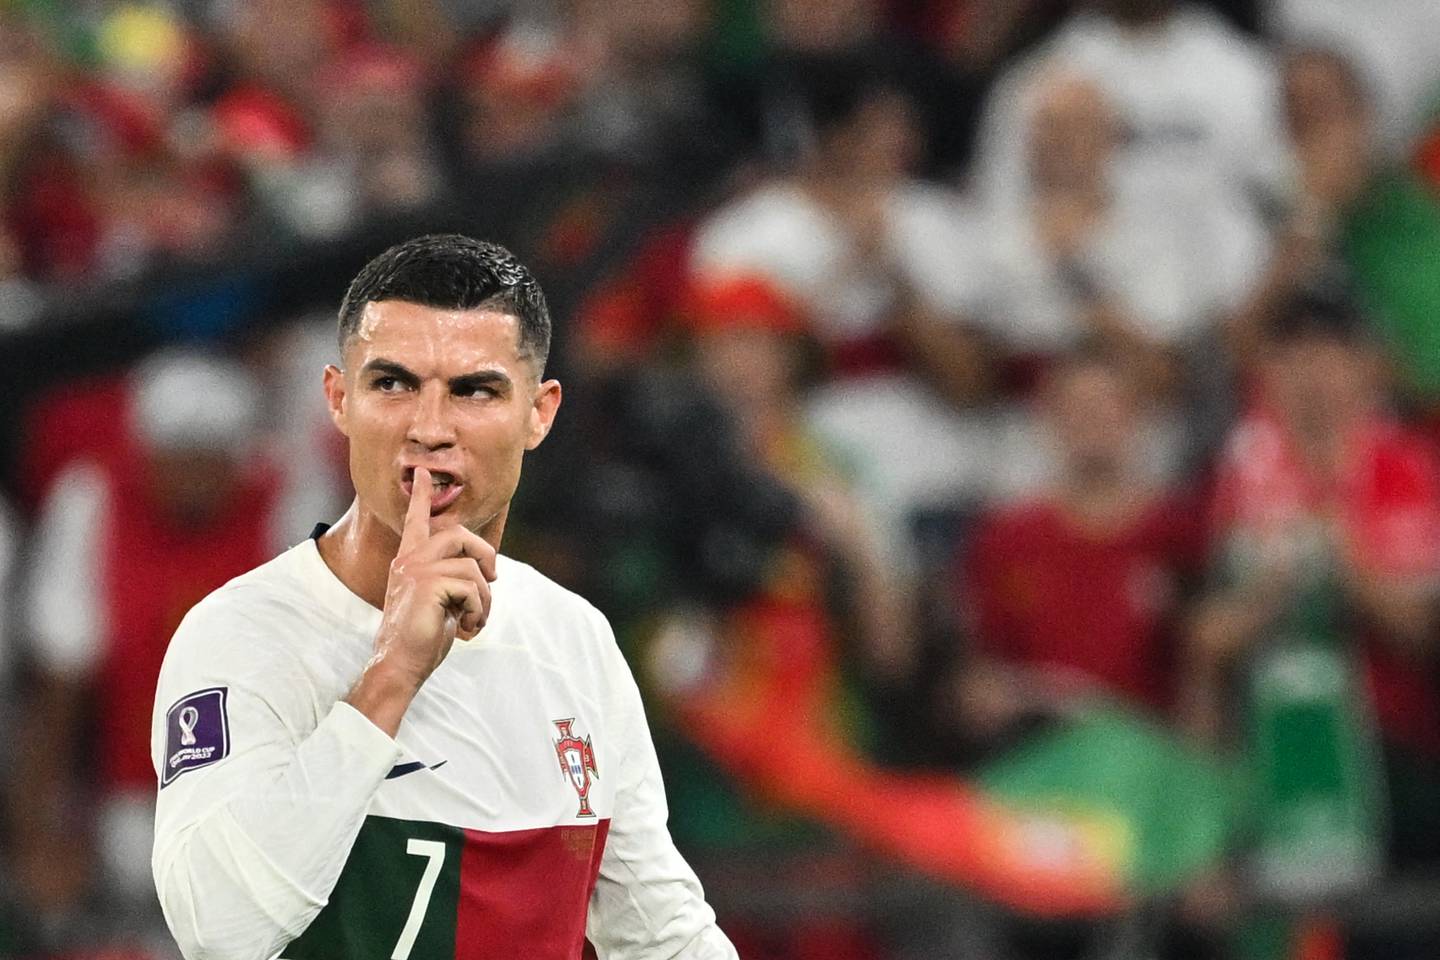 Por qué a Cristiano Ronaldo le dicen El Bicho? | La Teja